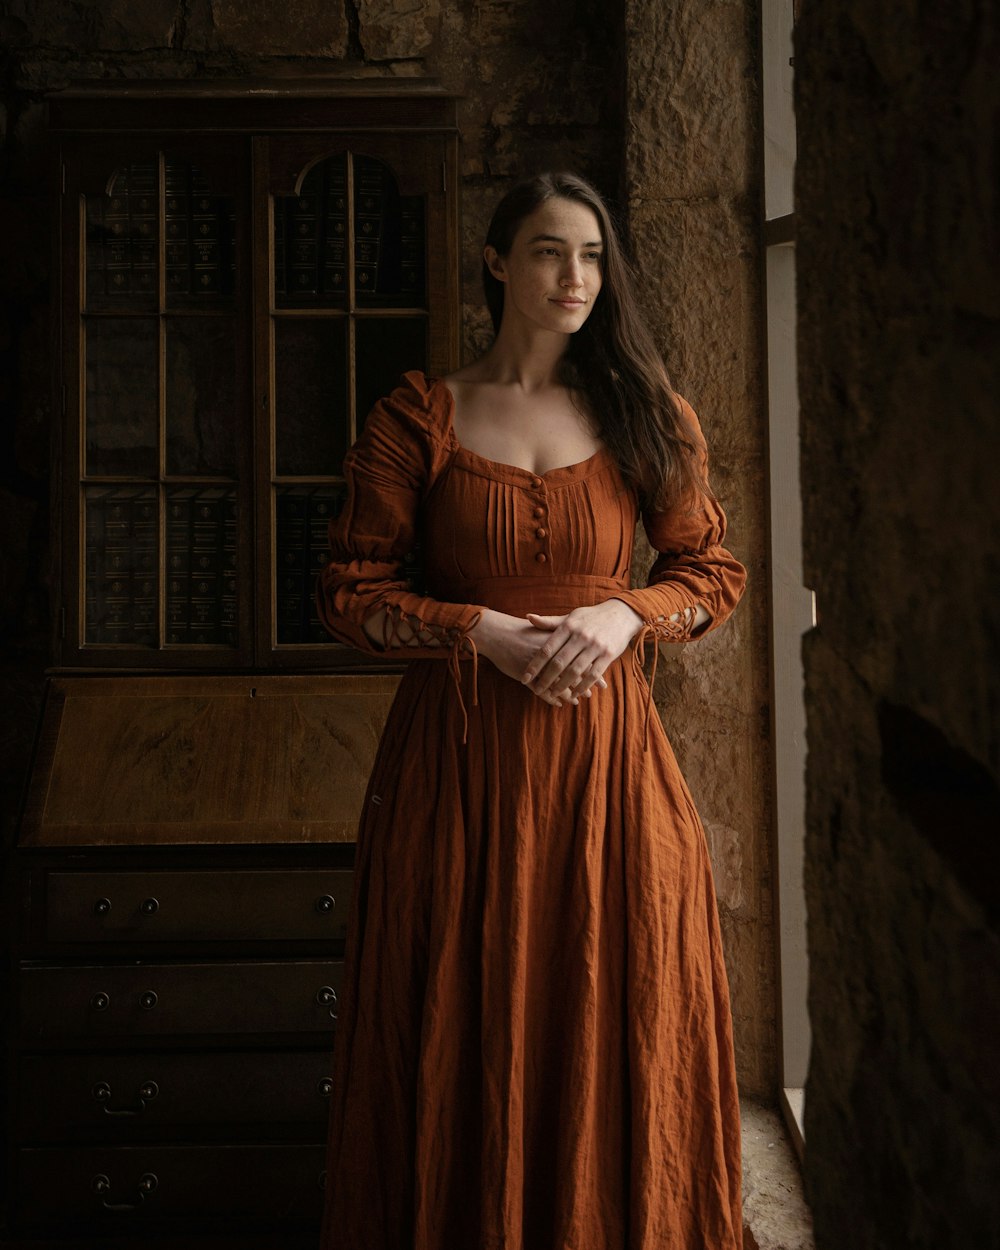 a woman in an orange dress standing by a window